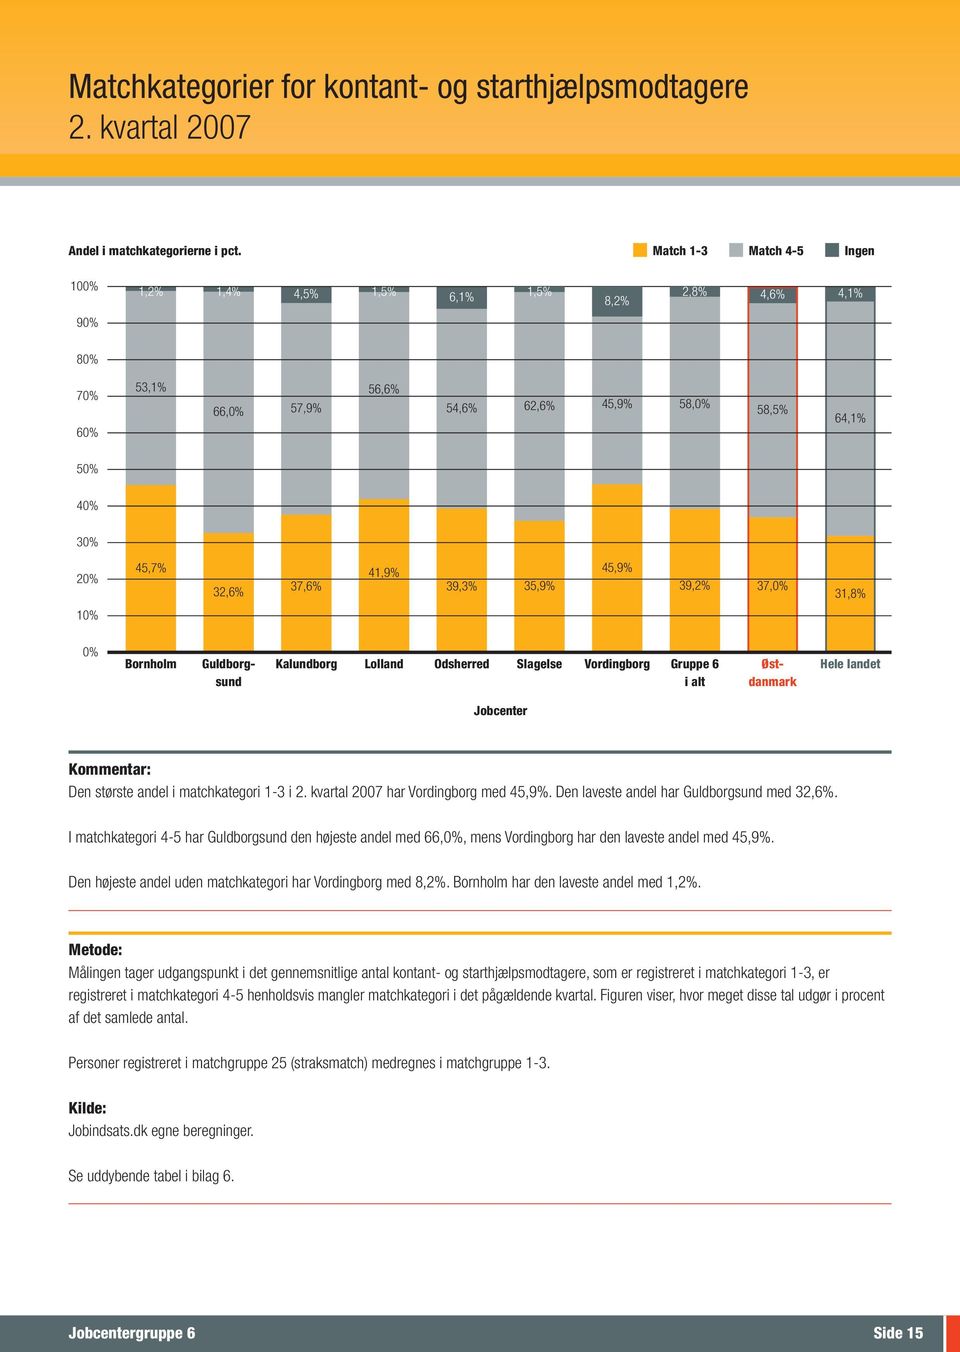 39,3% 35,9% 45,9% 39,2% 37,0% 31,8% 10% 0% Bornholm Guldborg- Kalundborg Lolland Odsherred Slagelse Vordingborg Gruppe 6 Øst- Hele landet sund i alt danmark Den største andel i matchkategori 1-3 i 2.